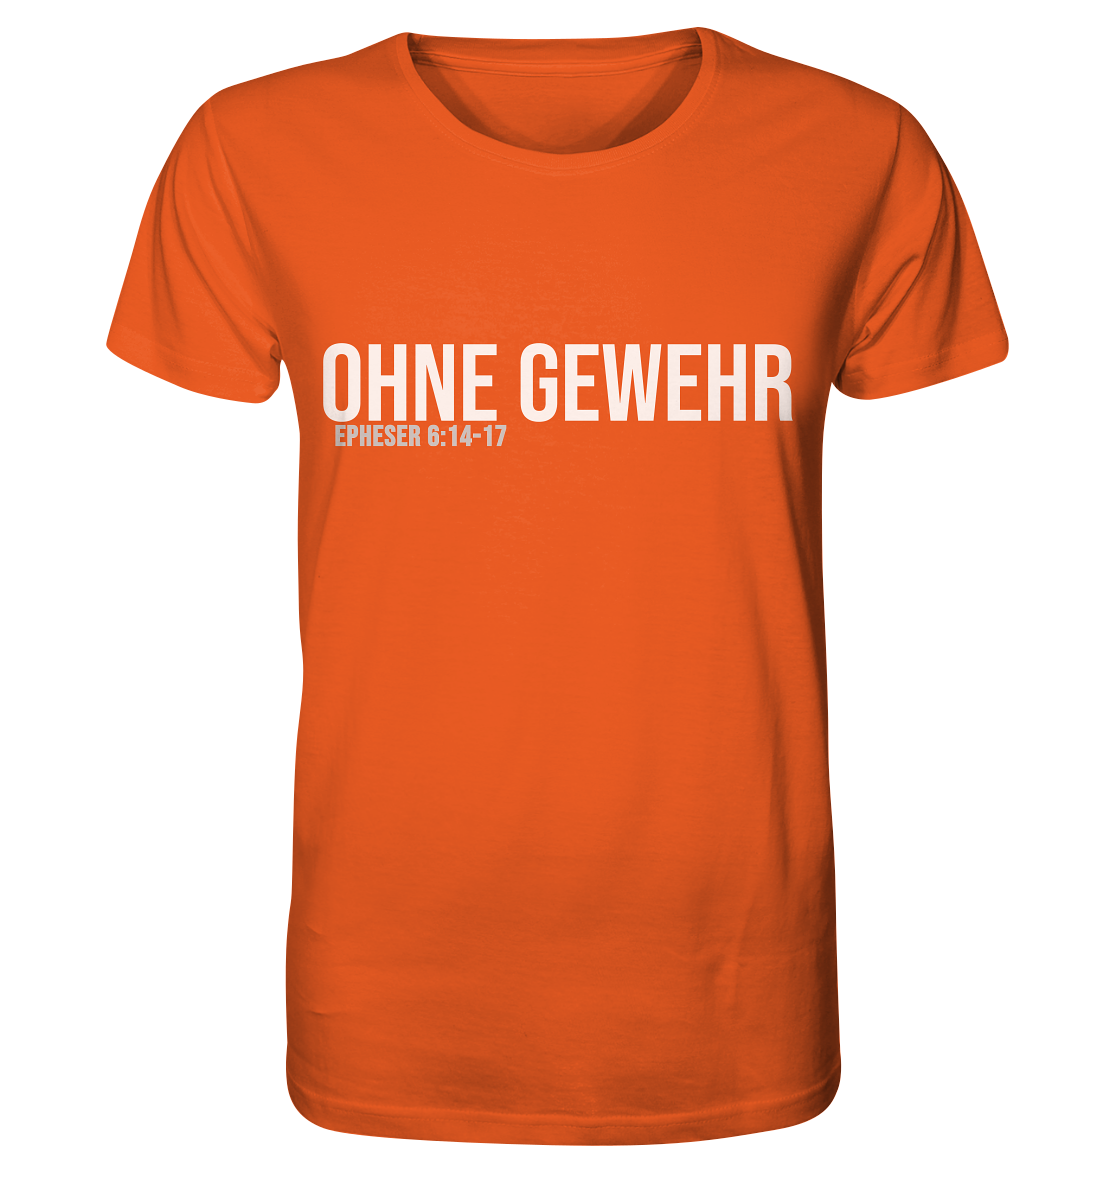 OHNE GEWEHR - weiß auf bunt - Organic Shirt